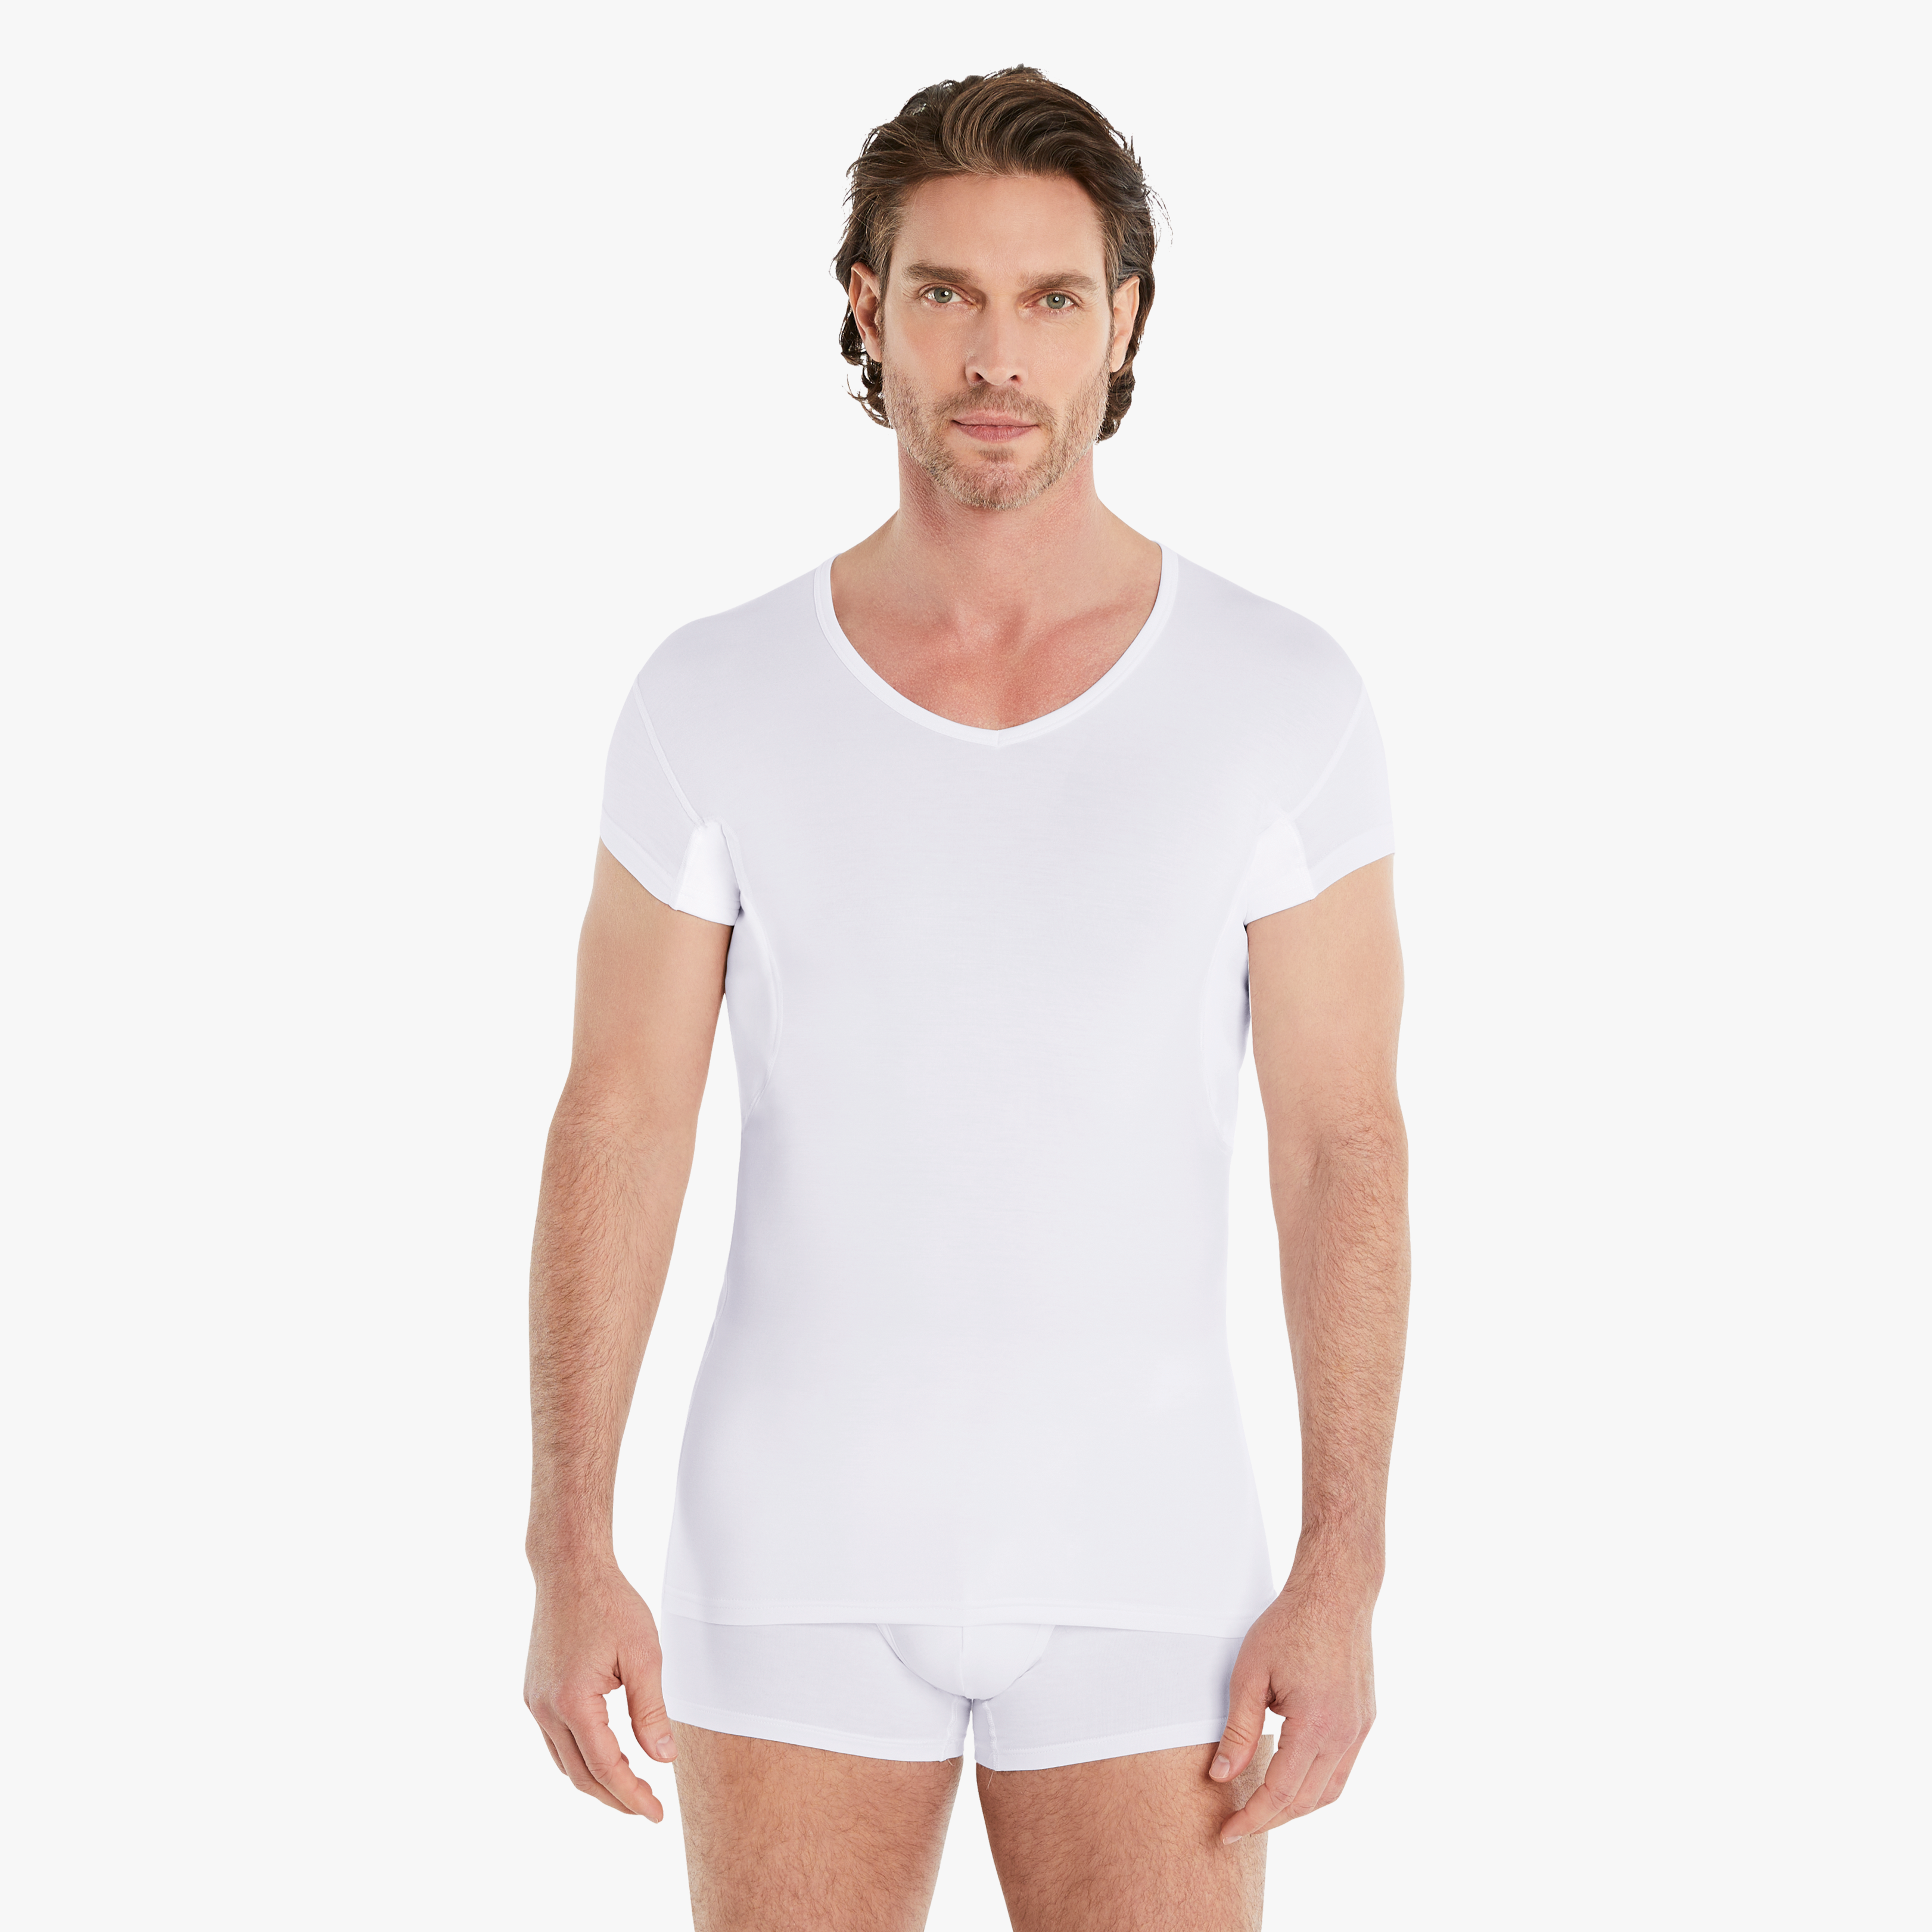 Selbstbewusster Mann trägt weißes Anti-Schweiß Unterhemd Herren mit verkürzten Ärmeln in Größe M. 100% Schutz vor Schweißflecken dank Anti-Schweiß-Pads.  #farbe_weiß